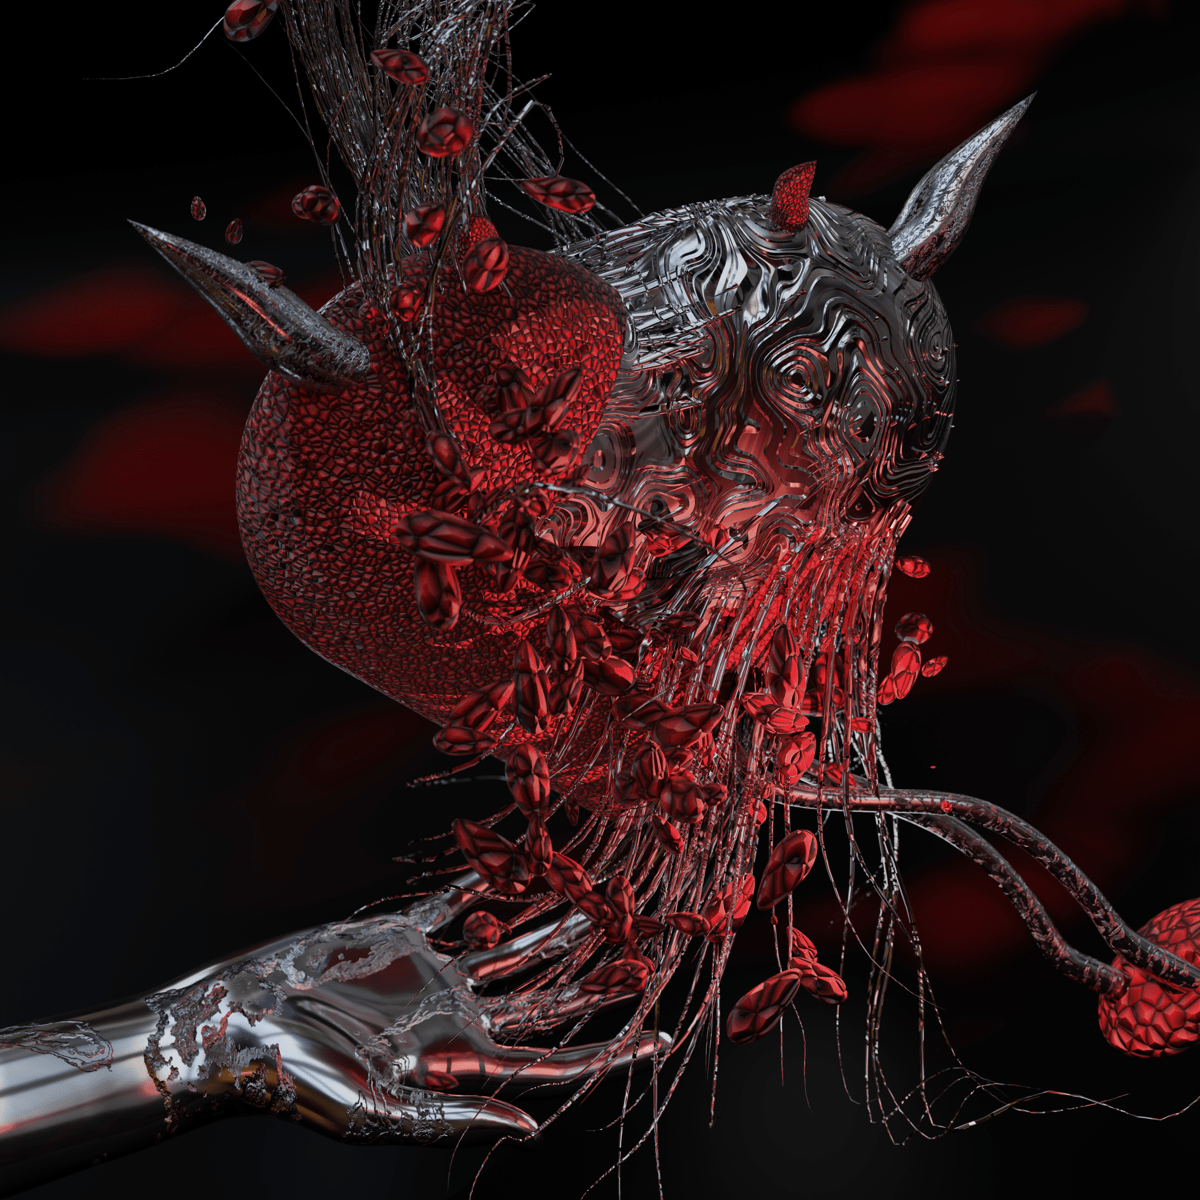 devil hell red bikers 3d artist Abstract Art freak monster horror metal